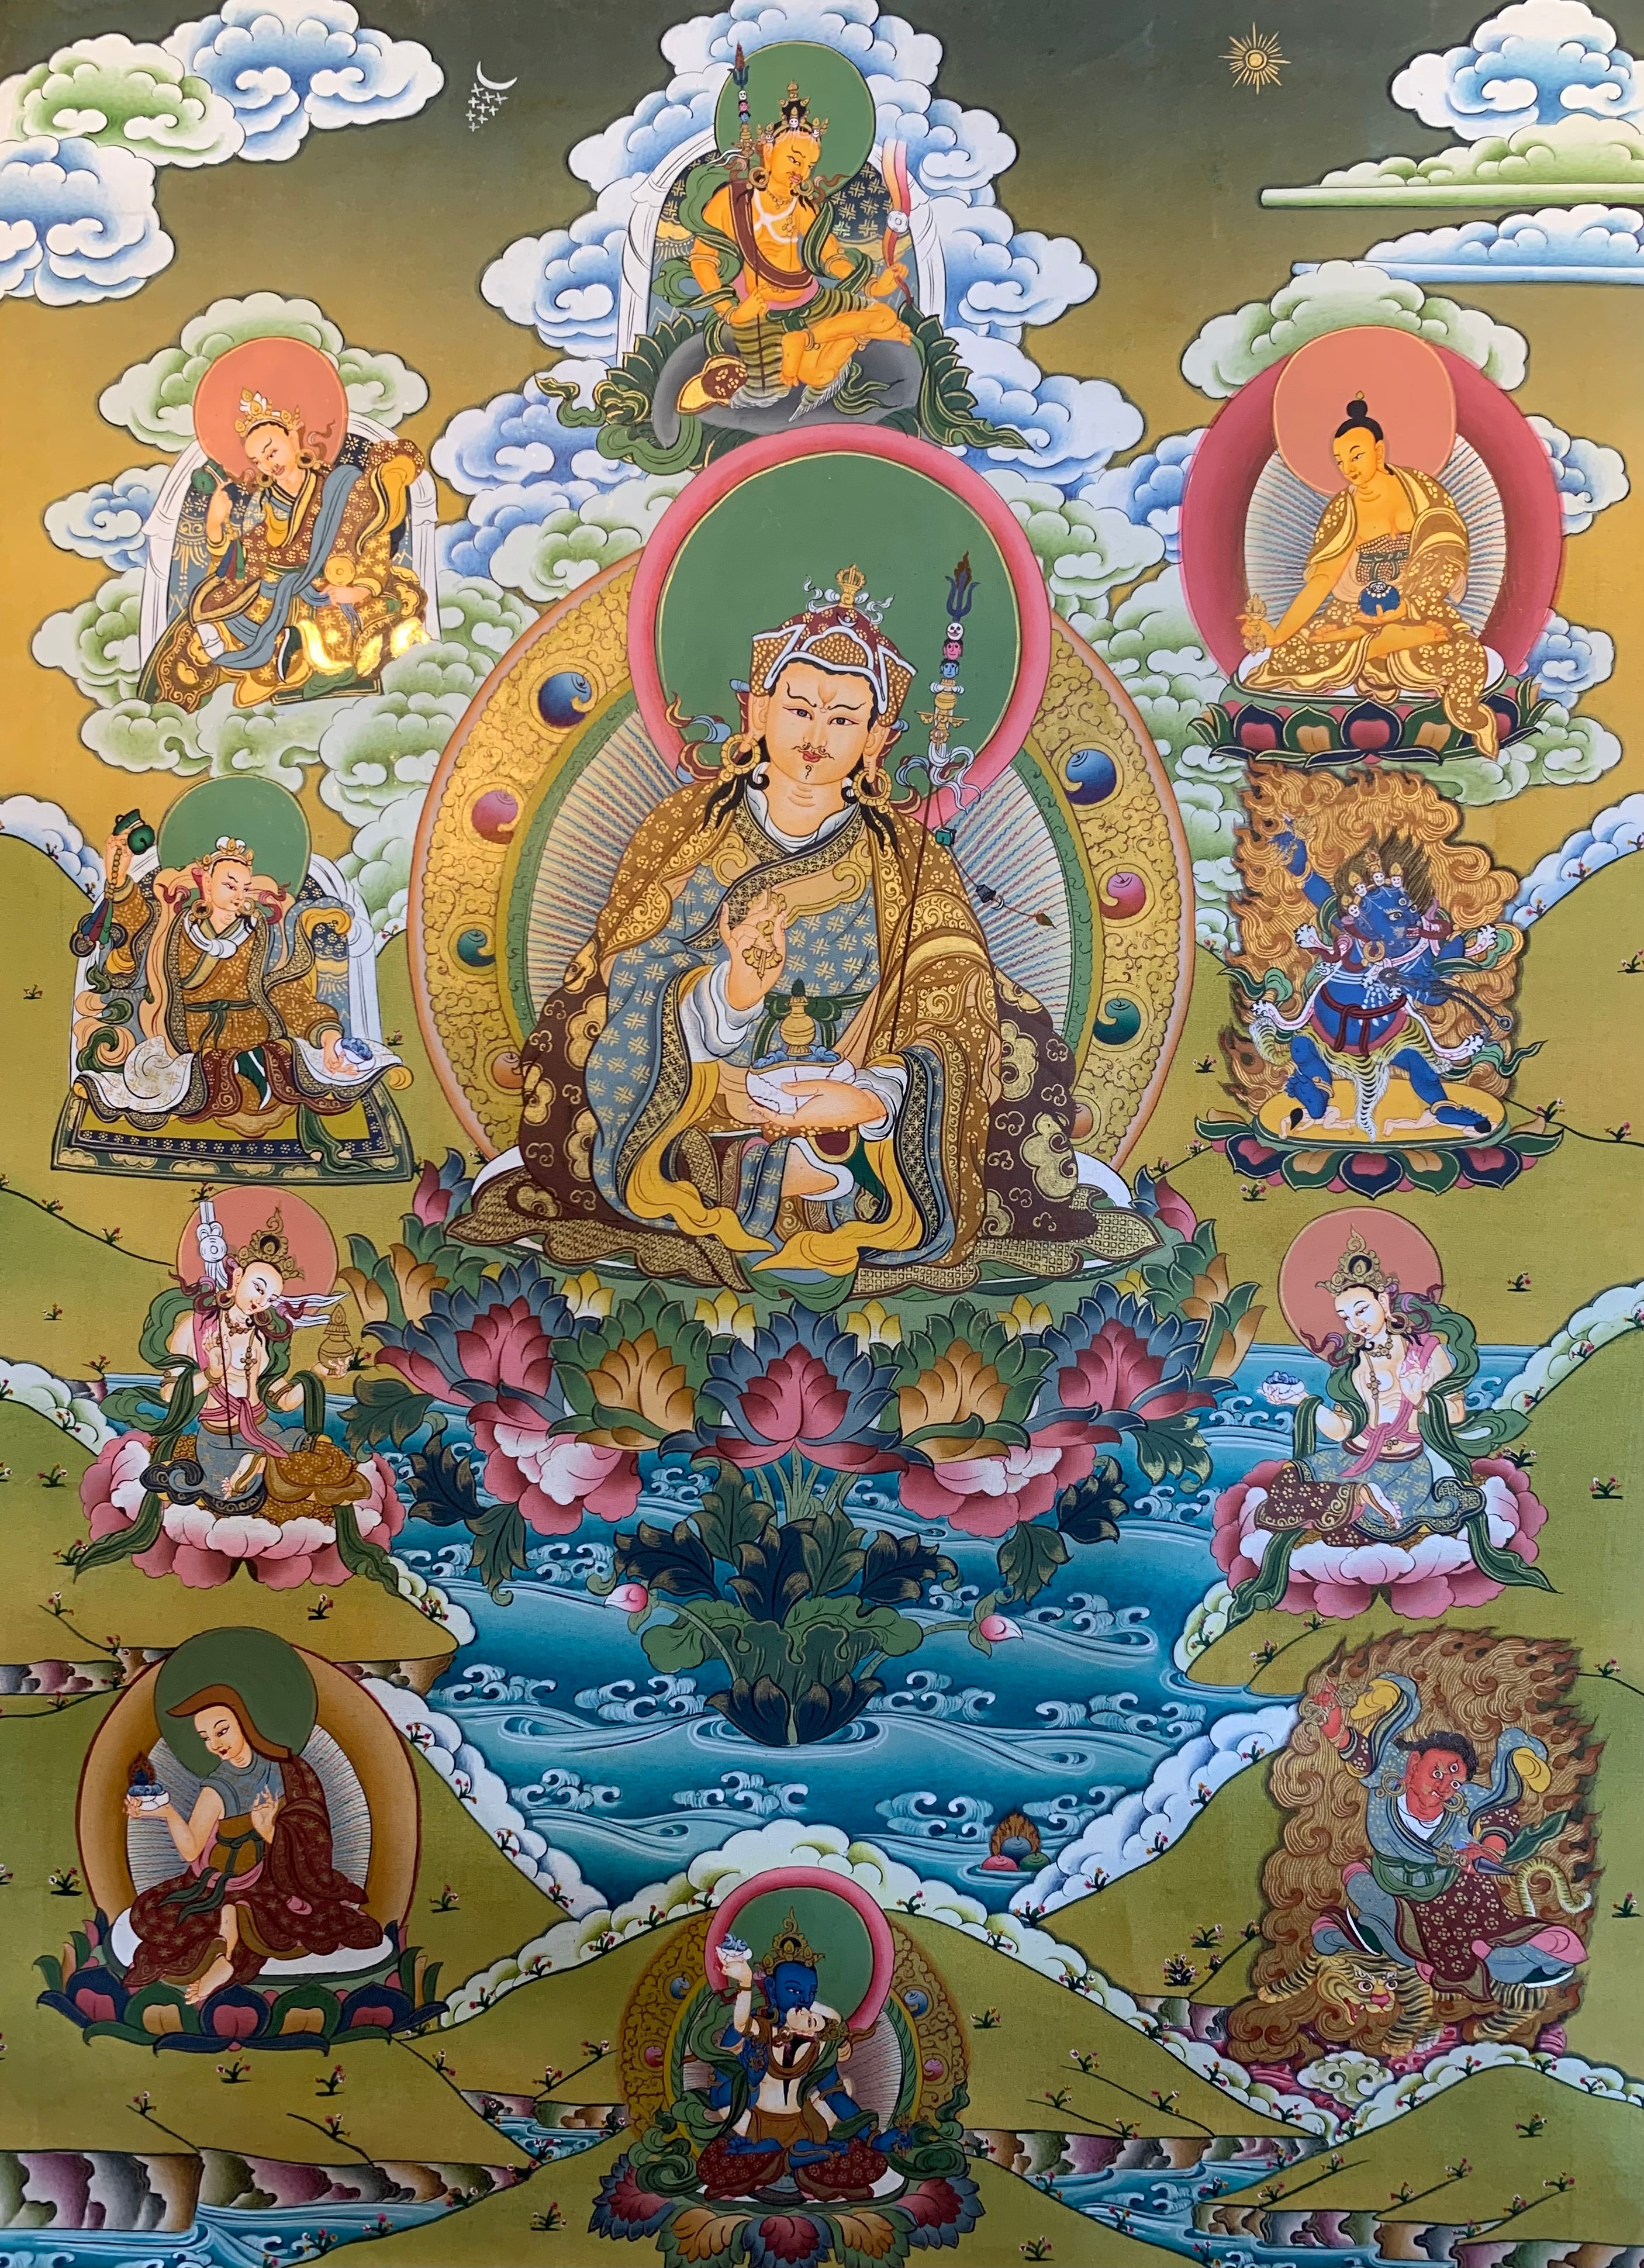 Guru Rinpoche Thangka Painting 40*30